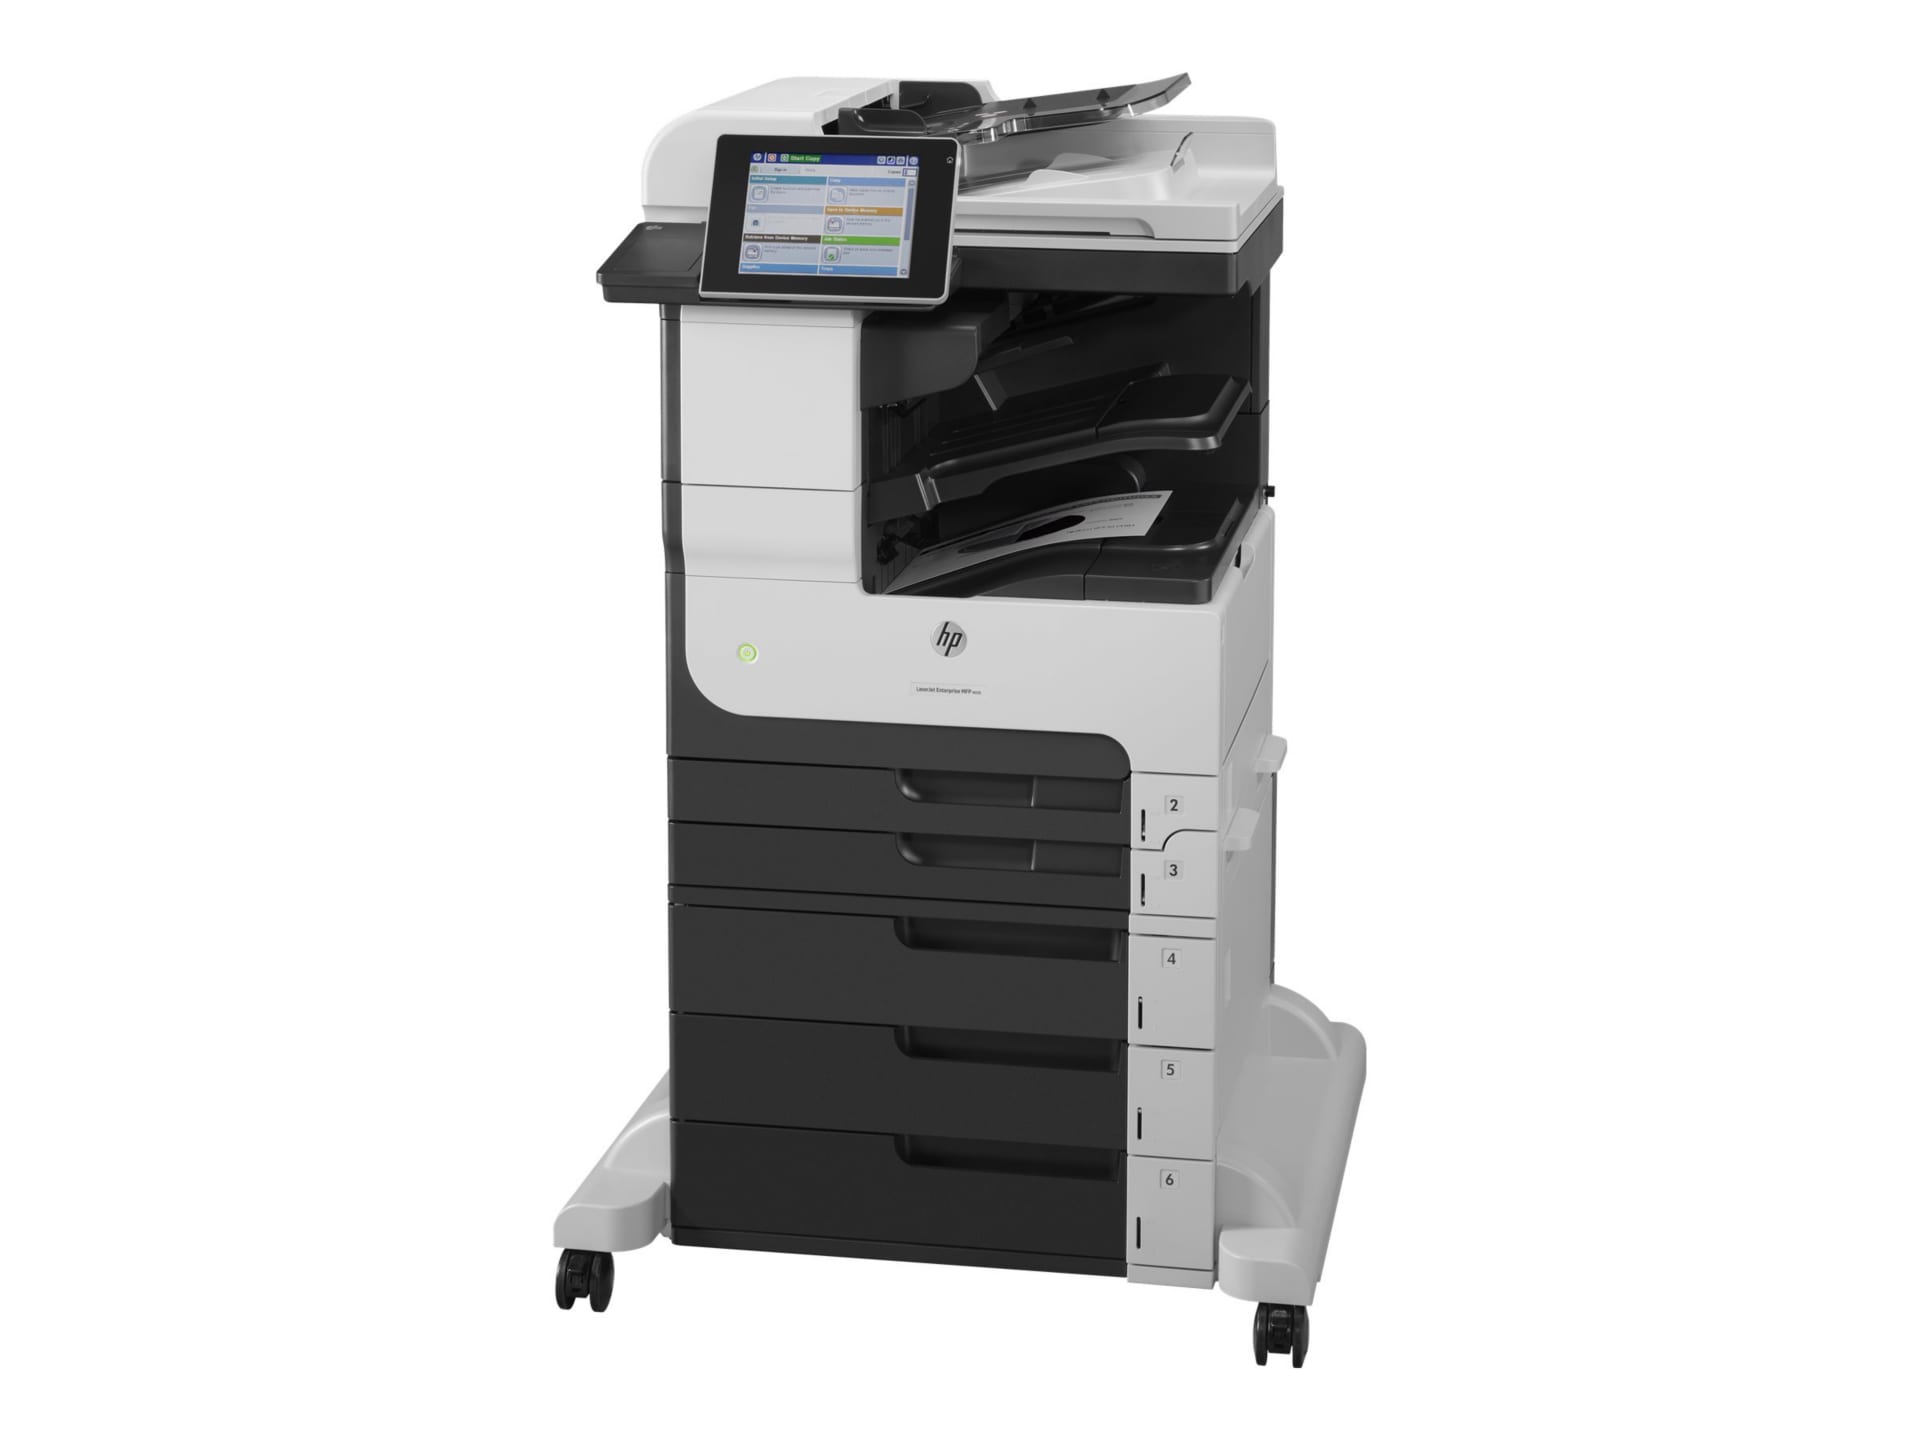 HP LaserJet M725 M725Z Laser Multifunction Printer-Monochrome-Copier/Fax/Scanner-40 ppm Mono Print-1200x1200